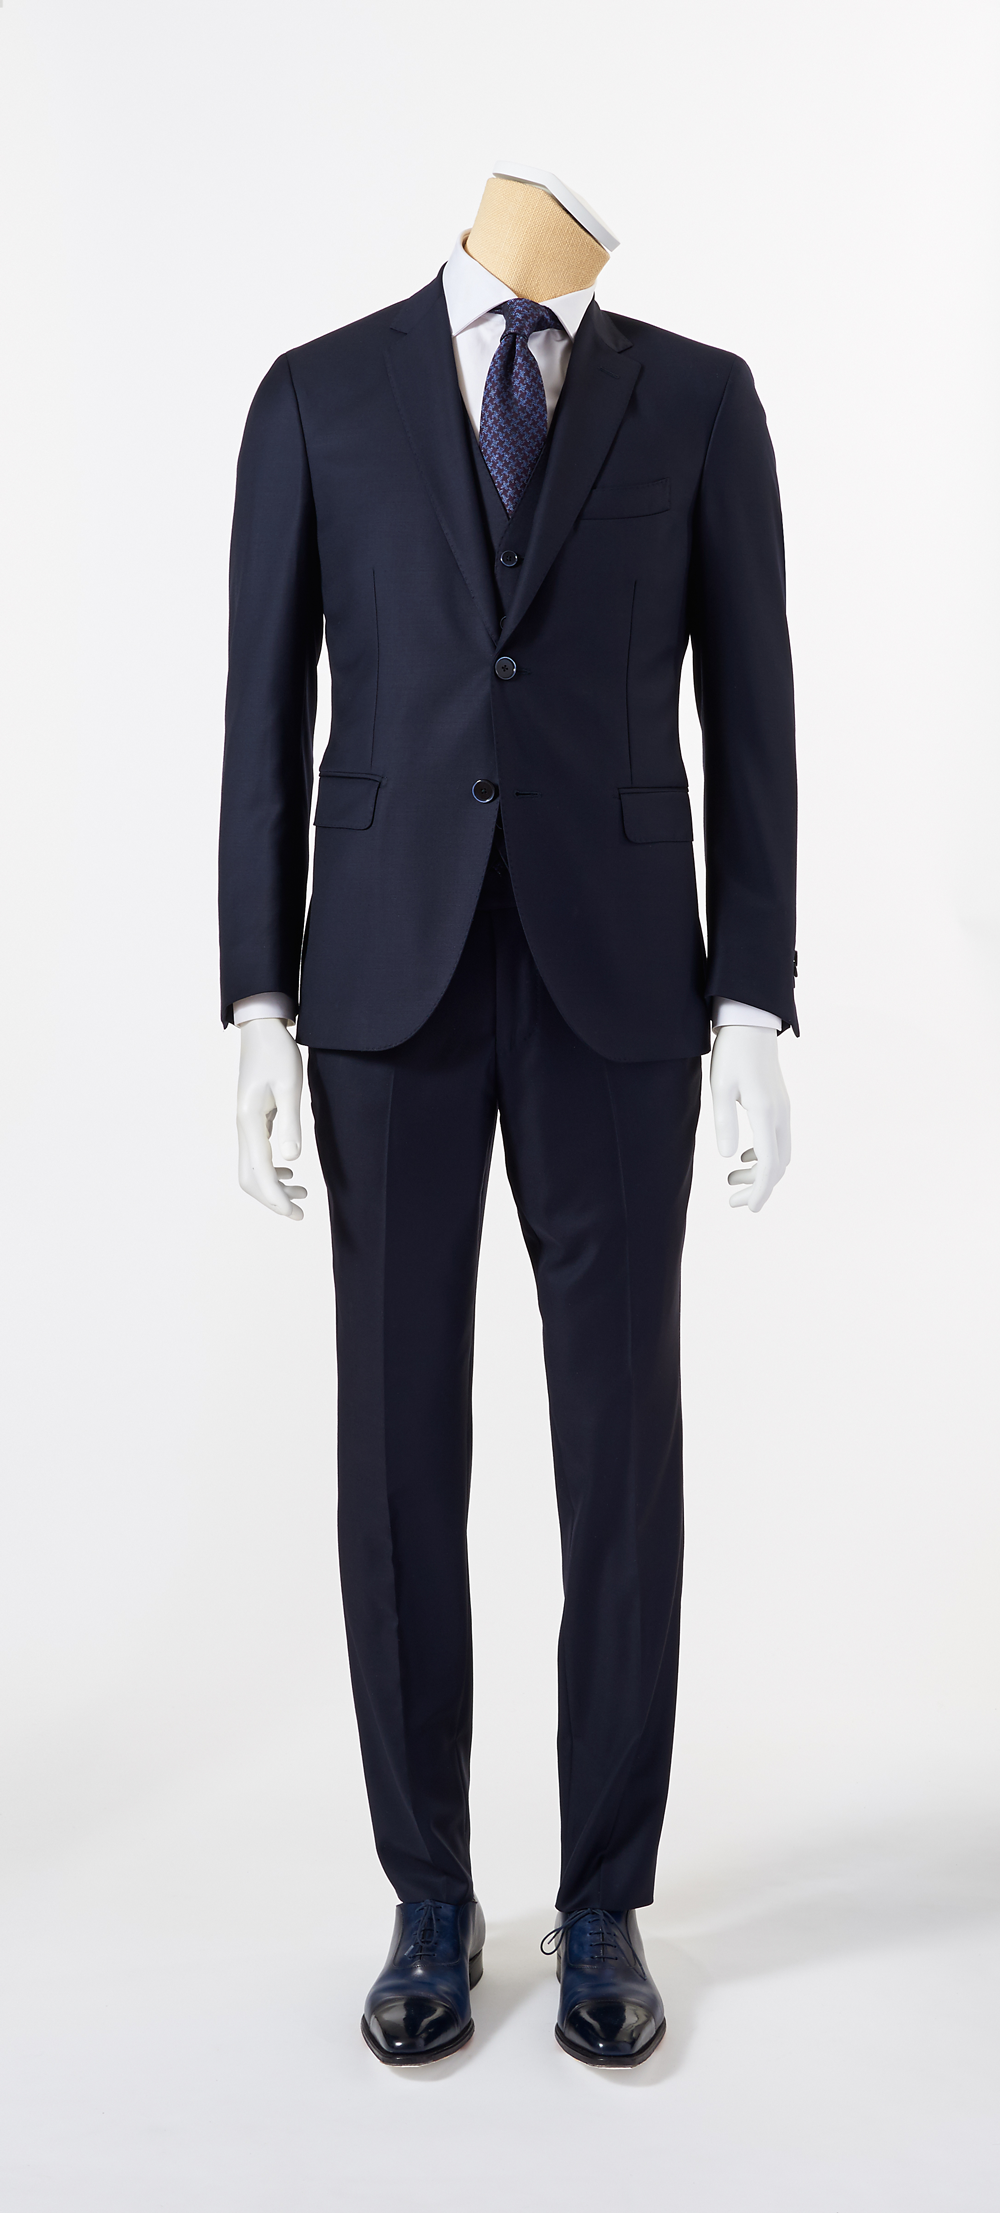 Calvaresi Men's Suit - 3 Piece Navy Wool Made In Italy